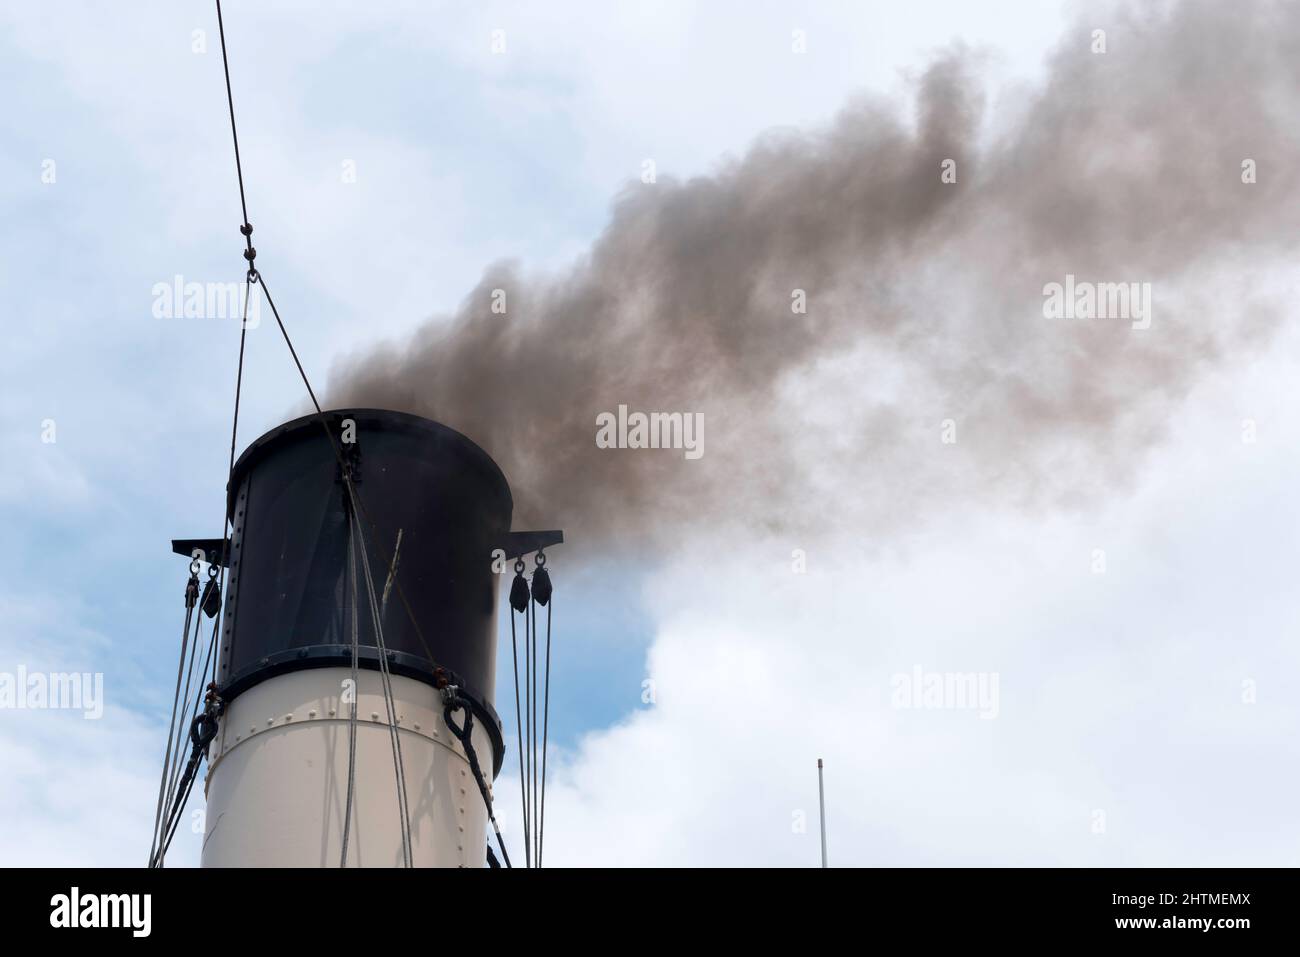 El humo de carbón negro se vierte desde el embudo del histórico remolcador de vapor de 1902 Waratah mientras navega por el puerto de Sídney en Australia Foto de stock